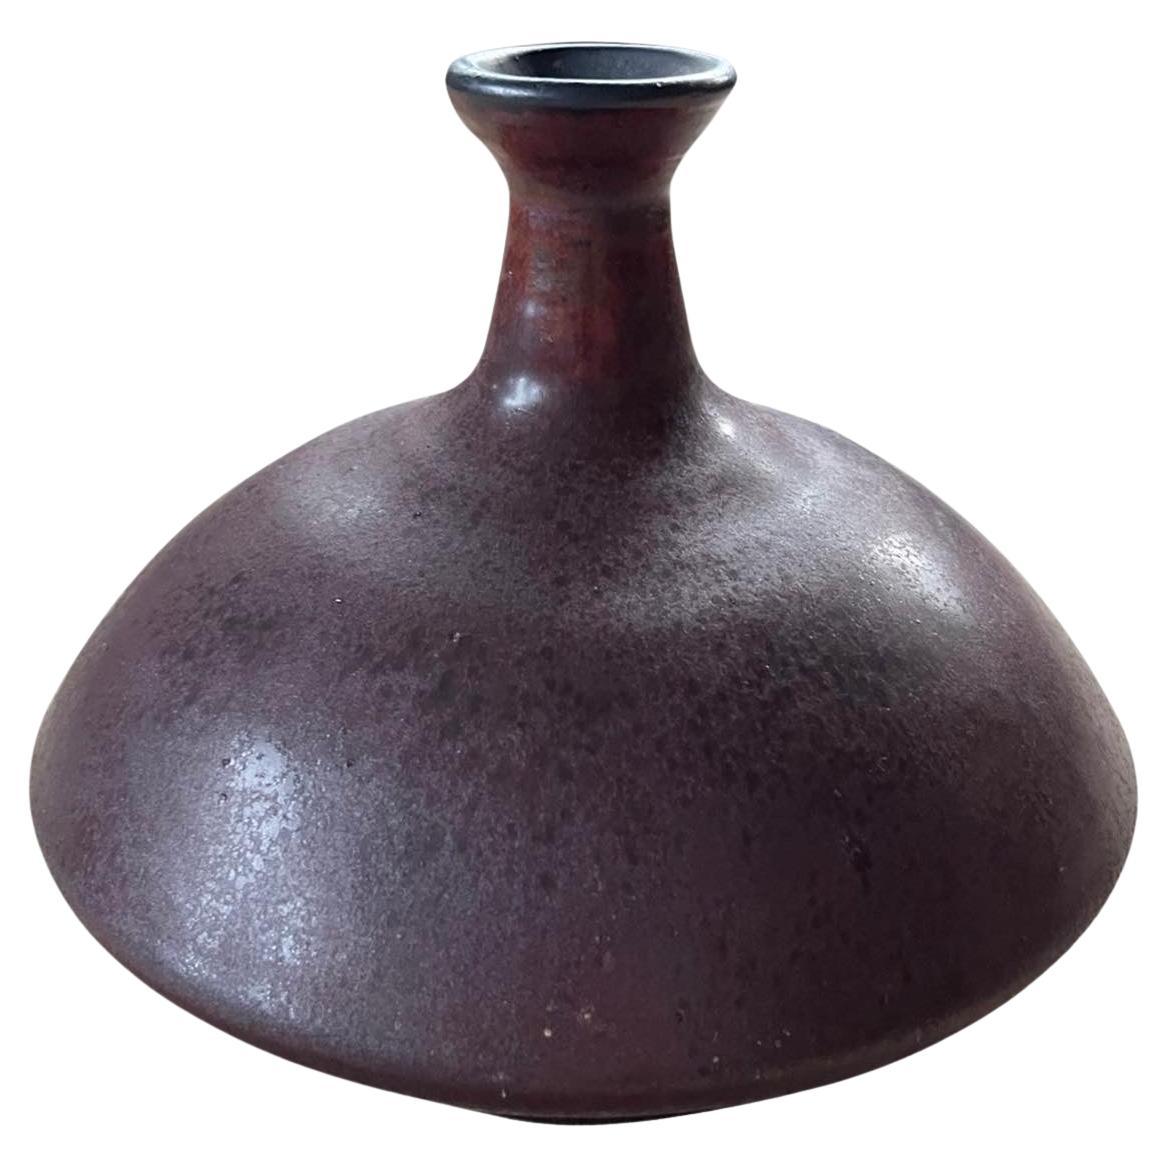 Eine schöne handgedrehte Vase/Gefäß des bekannten Keramikkünstlers Stephen Polchert (1920-2008). Polchert besuchte in den 1950er Jahren die Cranbrook Academy und war ein Assistent und Freund von Maija Grotell.